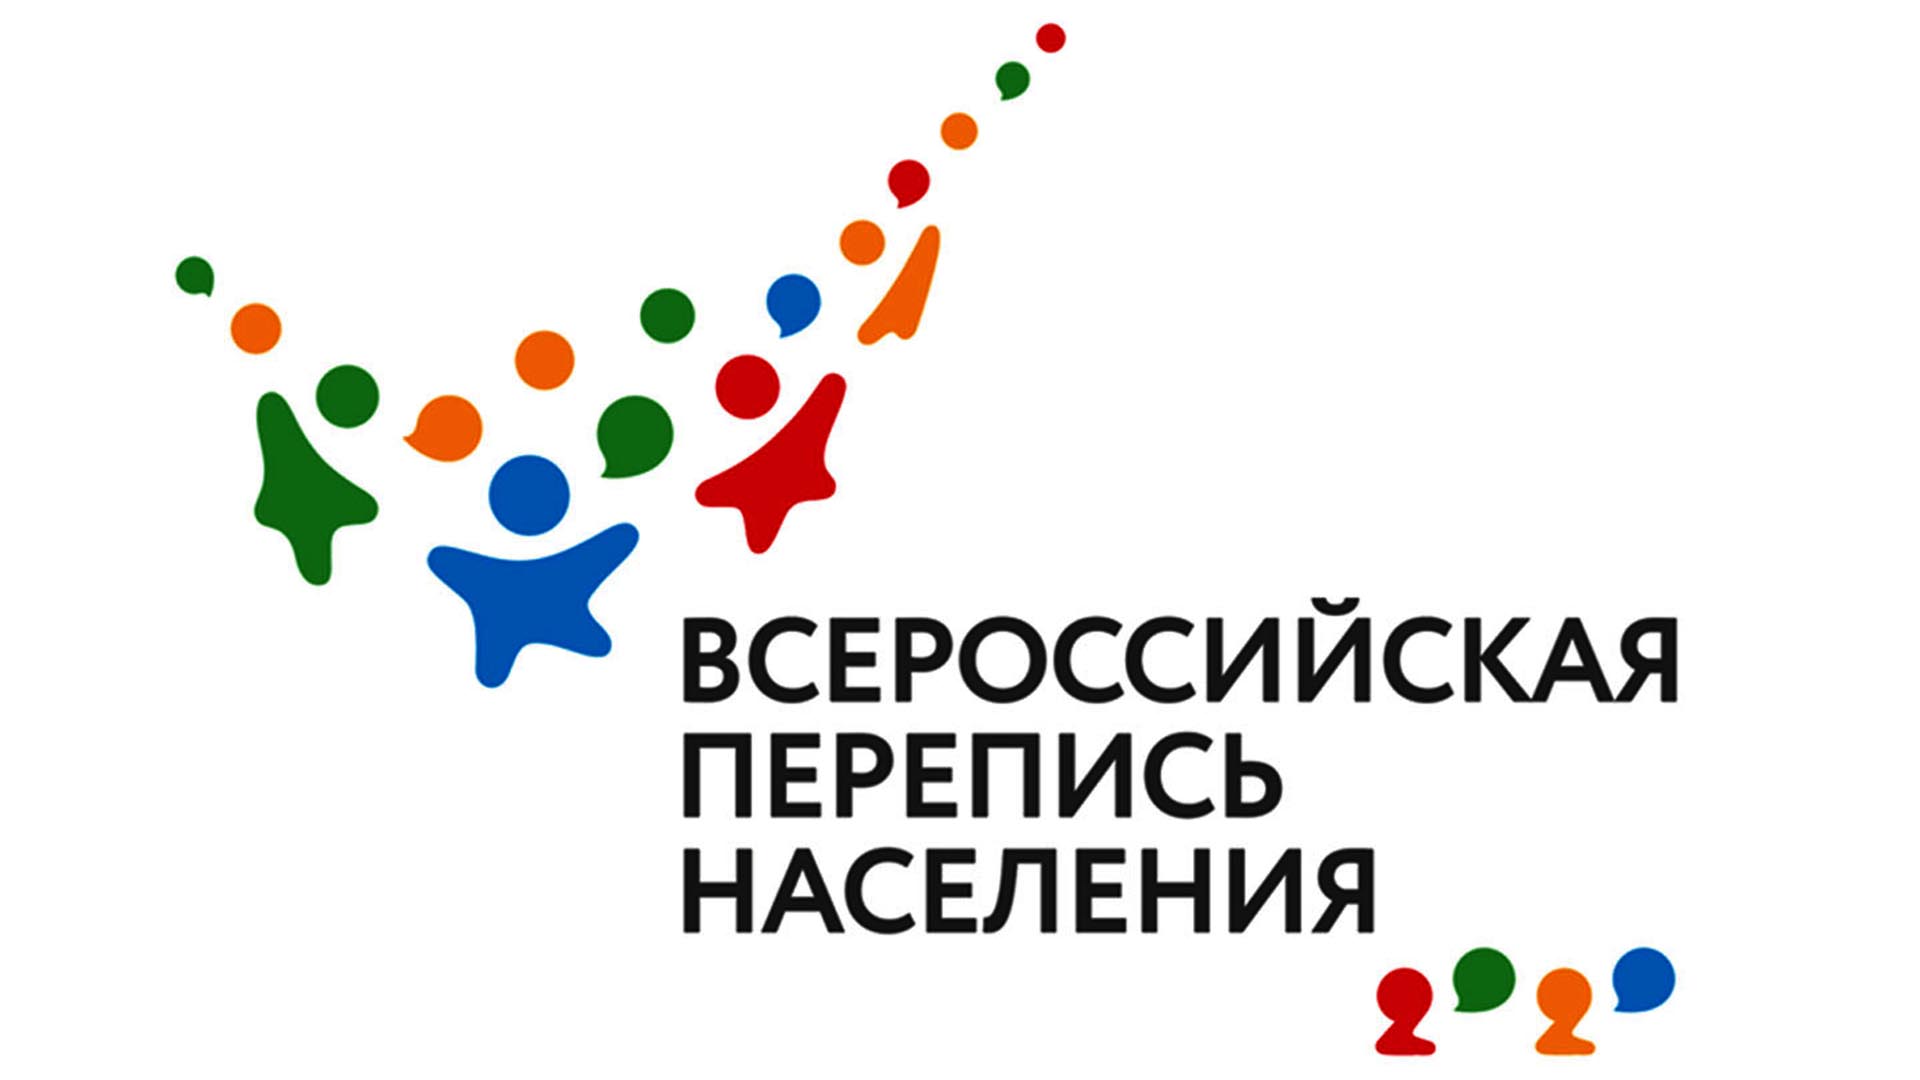 Около 30 процентов жителей Челябинской области приняли участие в переписи населения